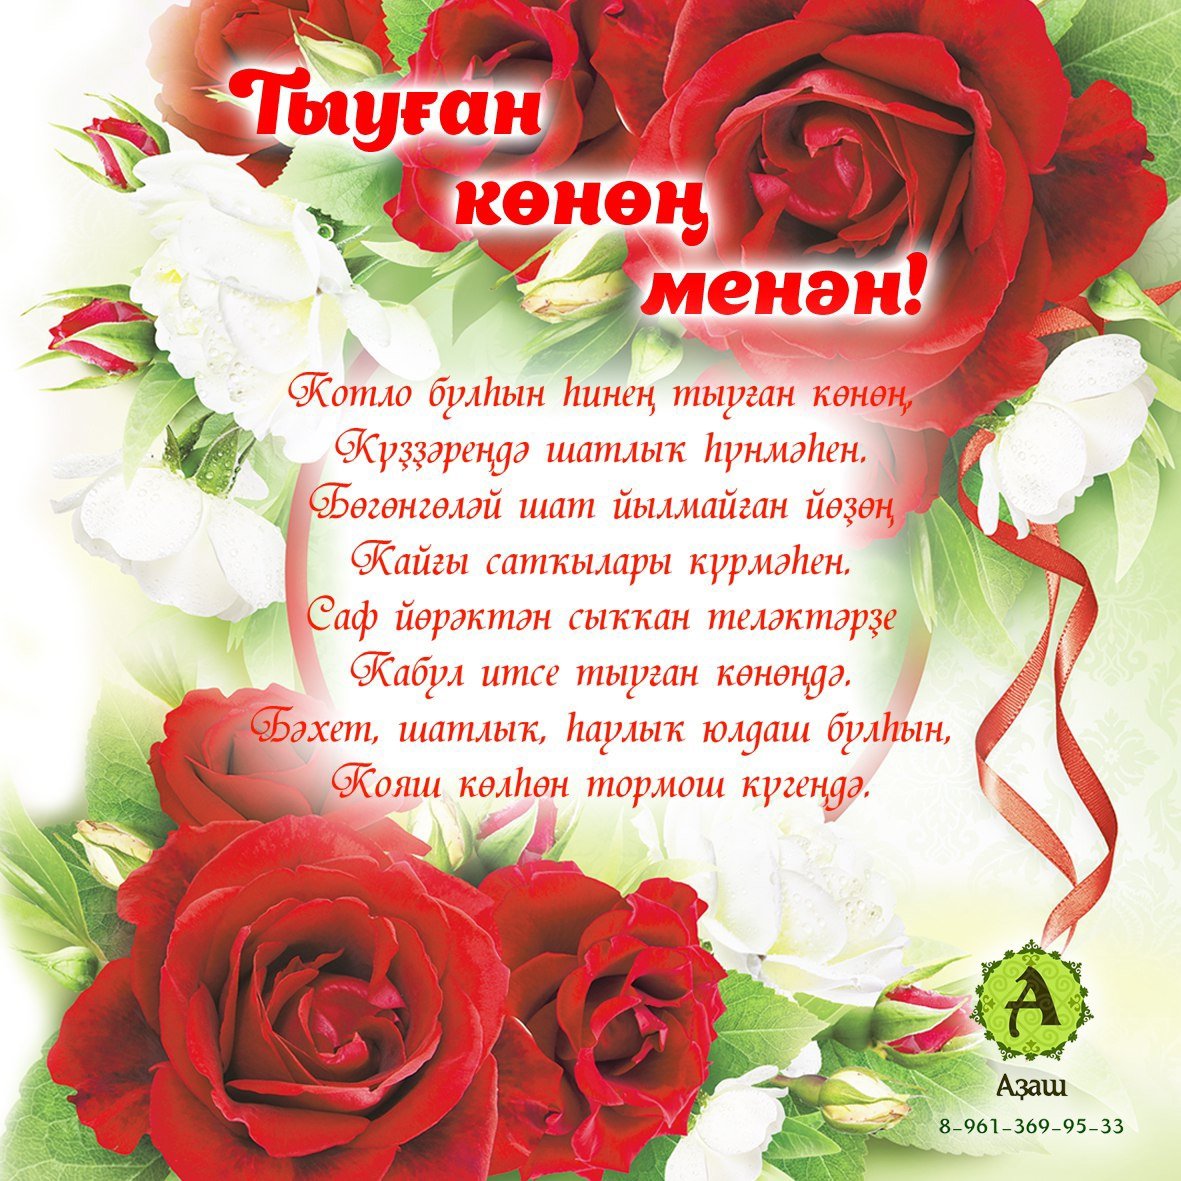 С днем рождения женщине по татарски. Поздравления на башкирском языке. Поздравления с днём рождения на башкирском языке. Поздравление с юбилеем на башкирском языке. Поздравления с днём рождения женщине на башкирском языке.